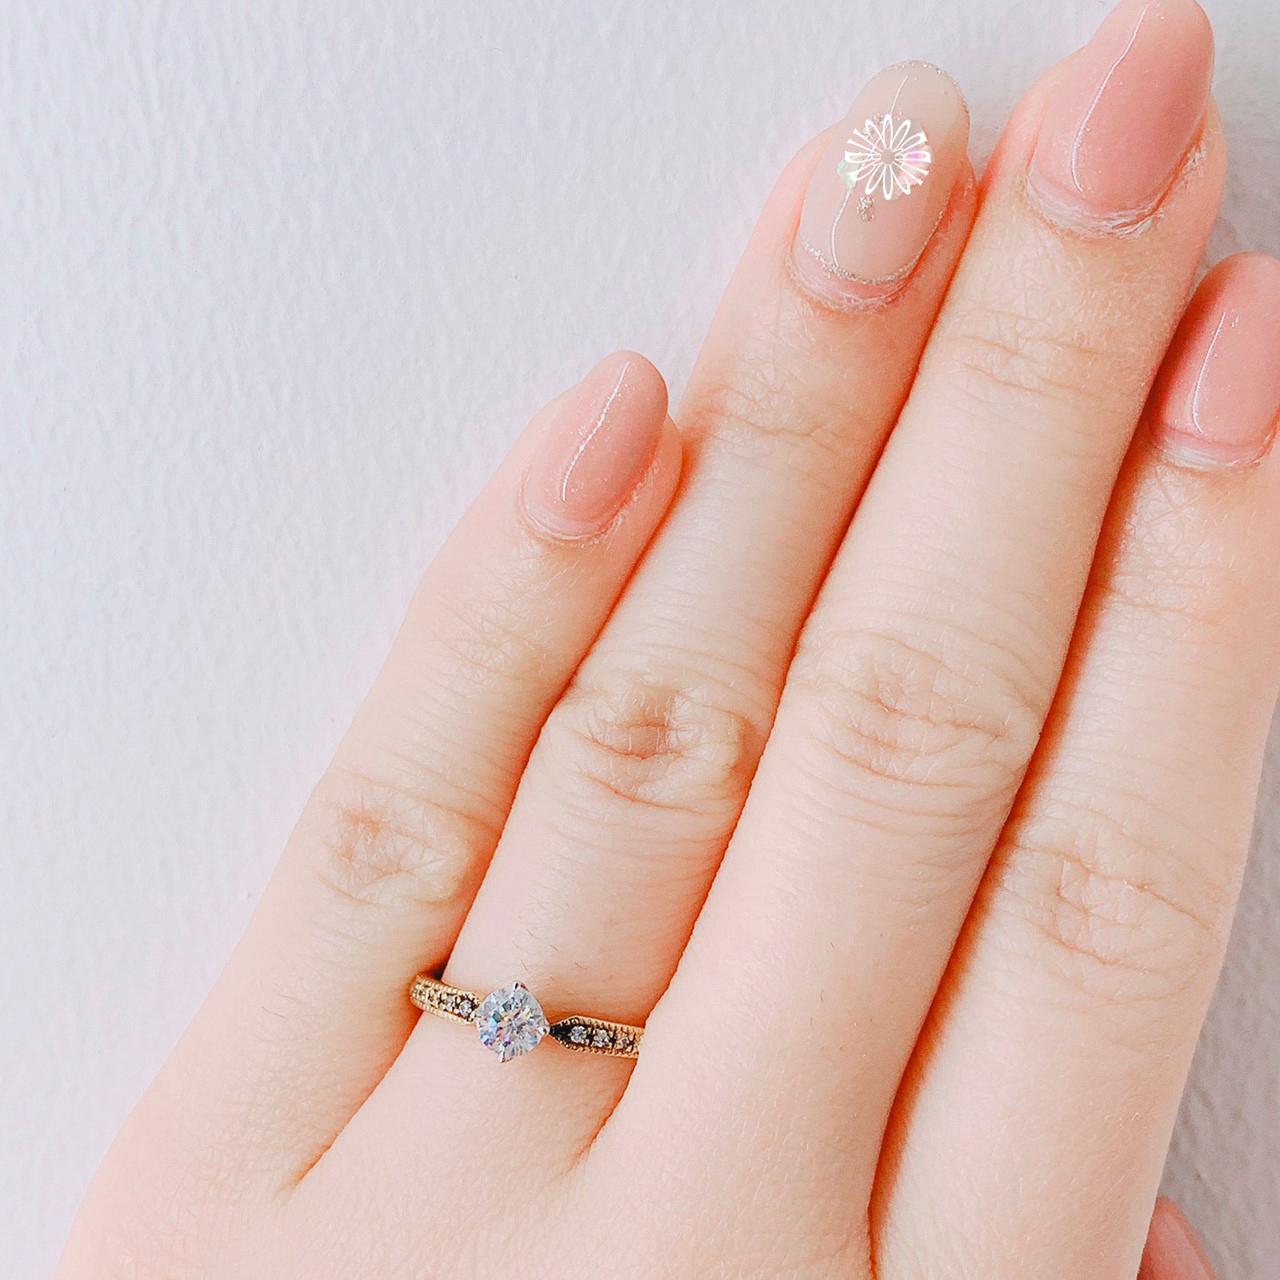 Brooch 婚約指輪 エンゲージリング かわいい ２色コンビミル打ちデザイン 新潟の婚約指輪 結婚指輪 Brooch ブローチ